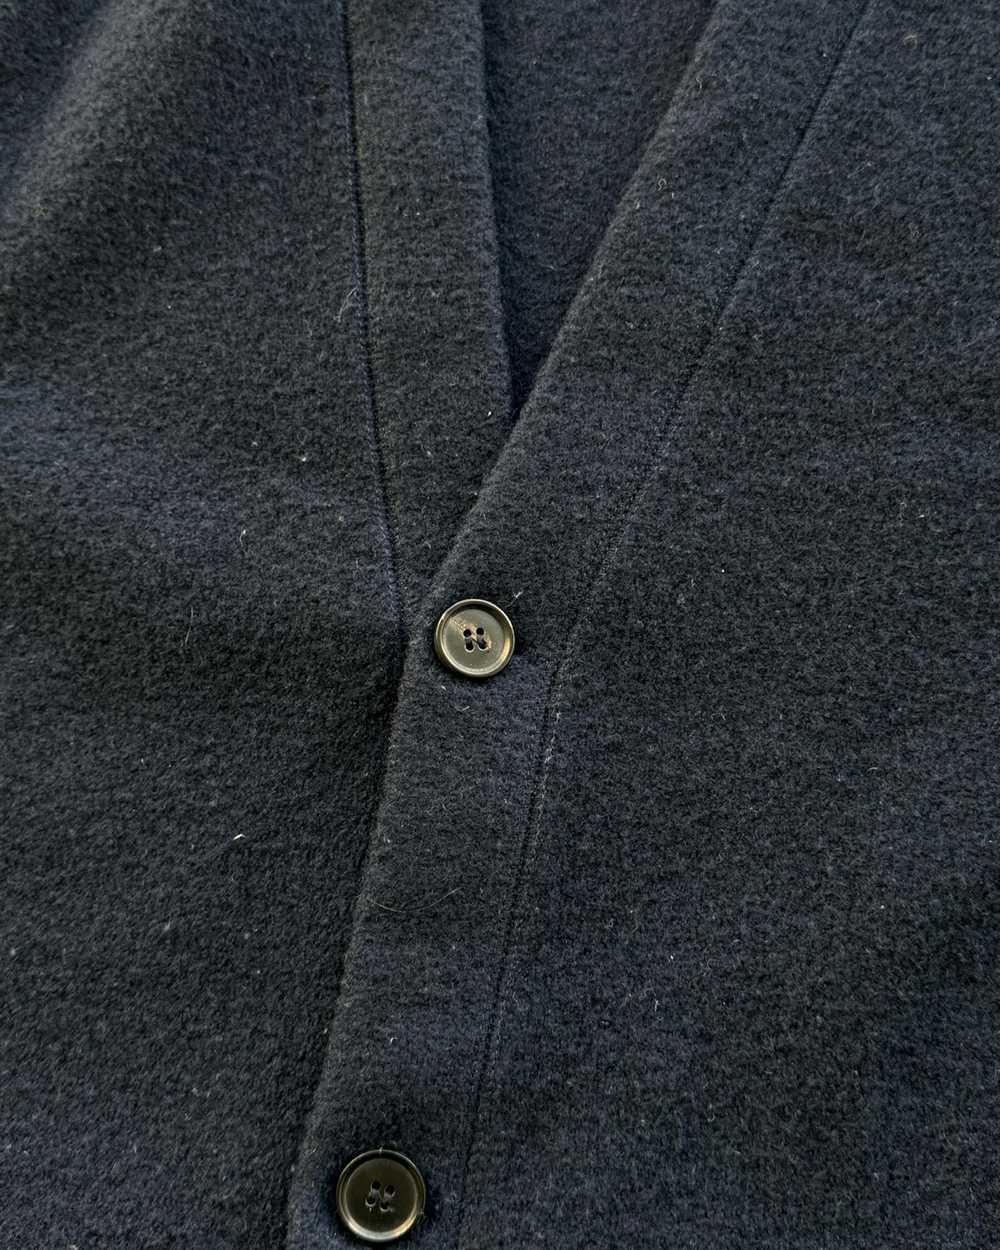 Billy Reid Billy Reid Boiled Merino Wool Cardigan - image 2